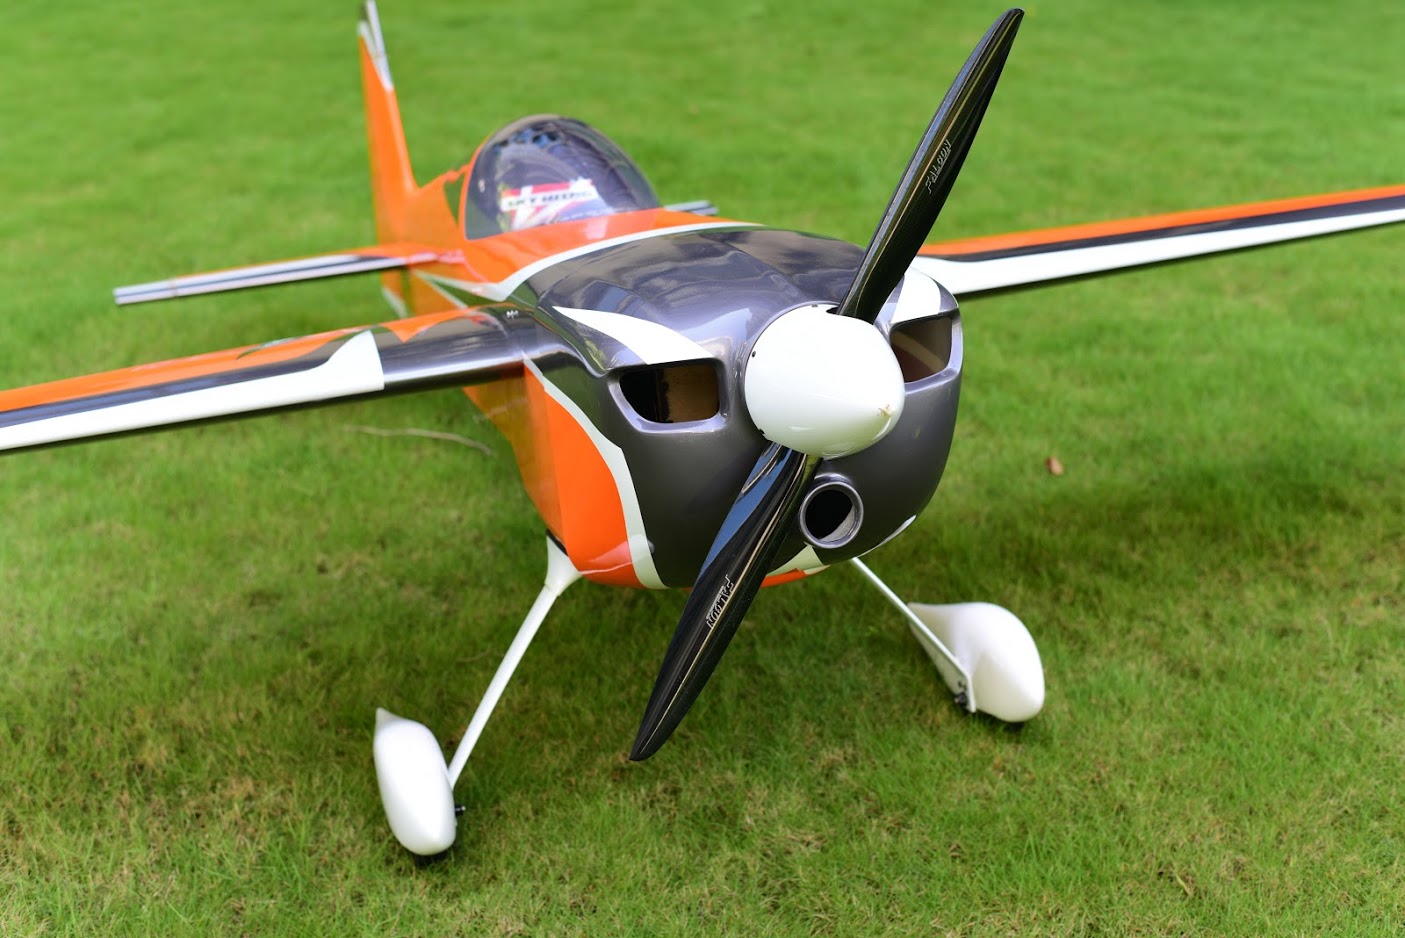 ARS 300 - 102 V3 - orange/grey/white